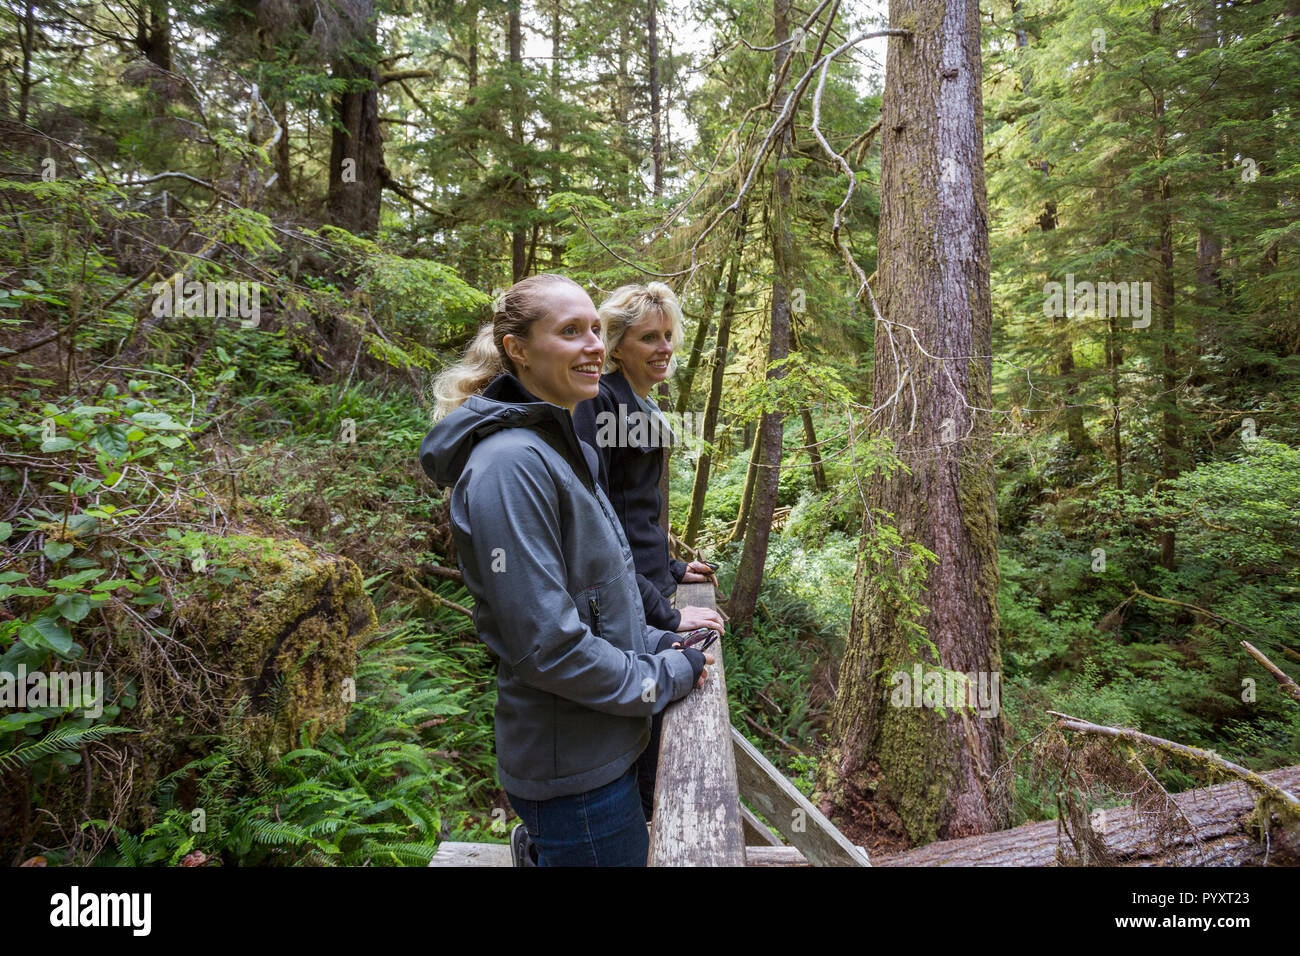 América del Norte, Canadá, Columbia Británica, Vancouver Island, La Reserva del Parque Nacional de Pacific Rim, dos mujeres turistas caminatas en el sendero selvático Foto de stock